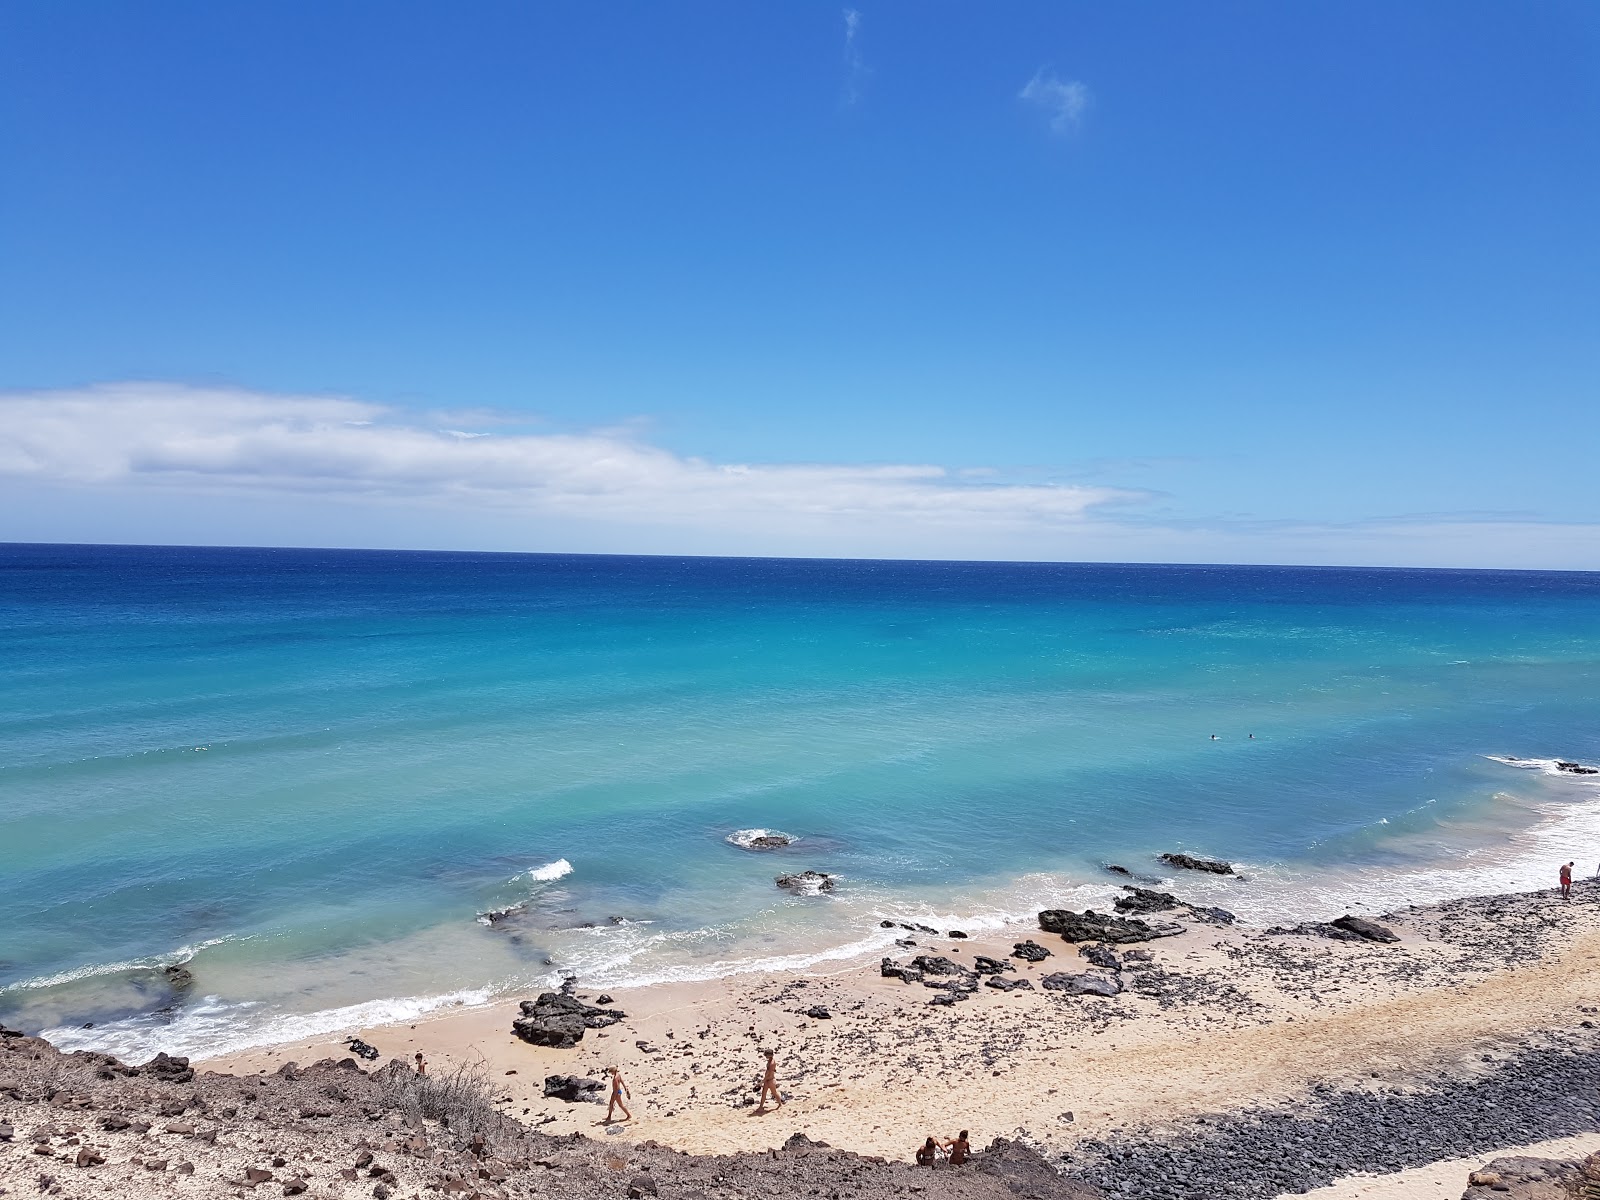 Playa de Butihondo'in fotoğrafı parlak kum yüzey ile